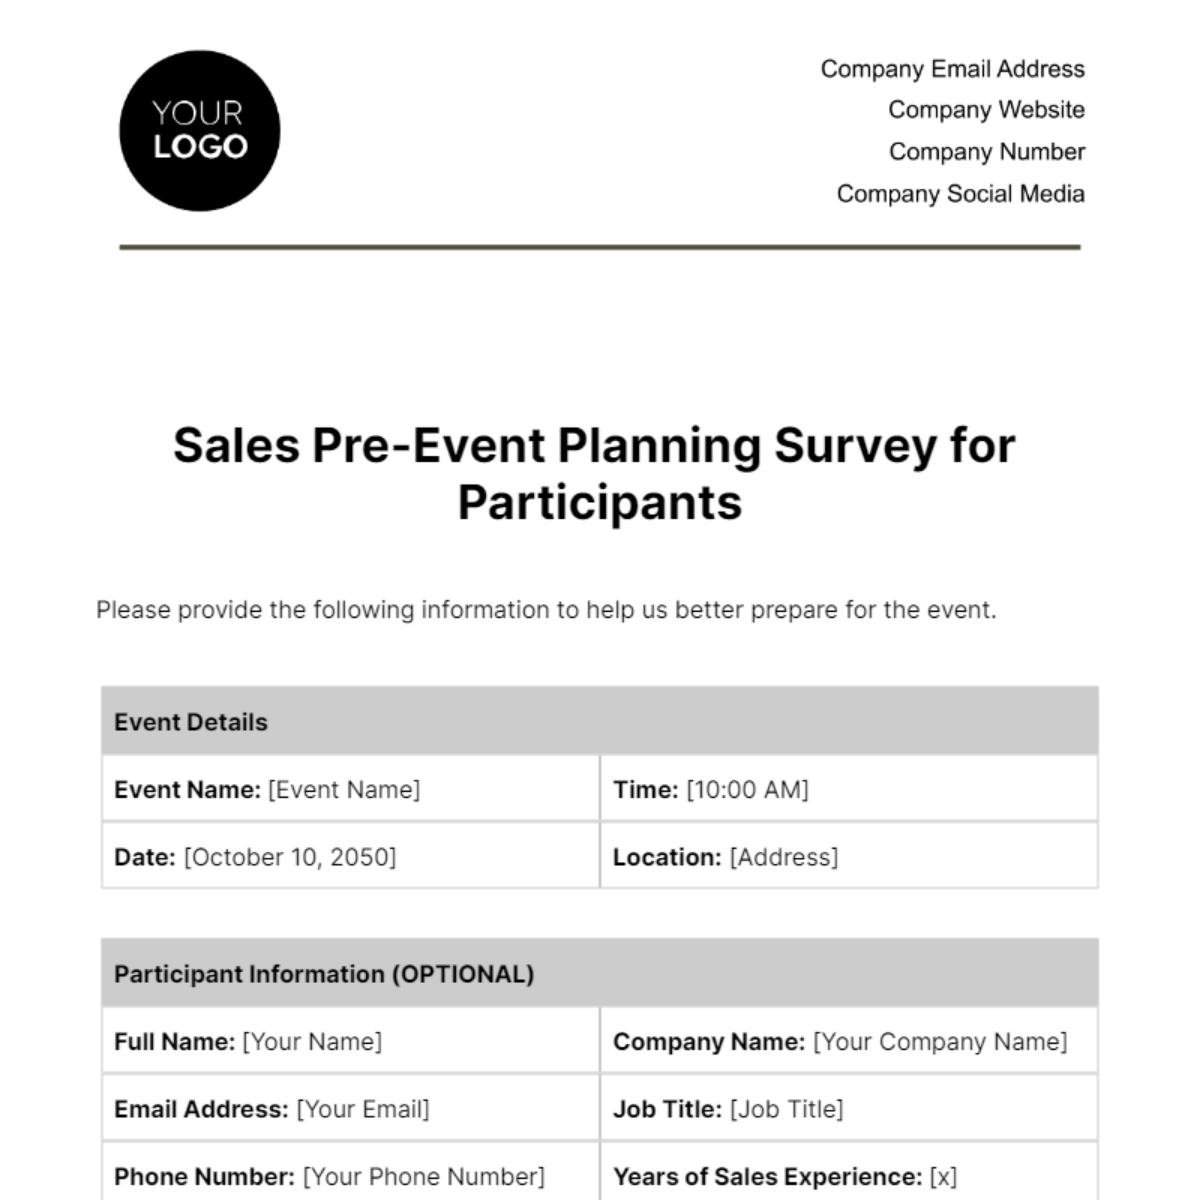 Sales Pre-Event Planning Survey for Participants Template